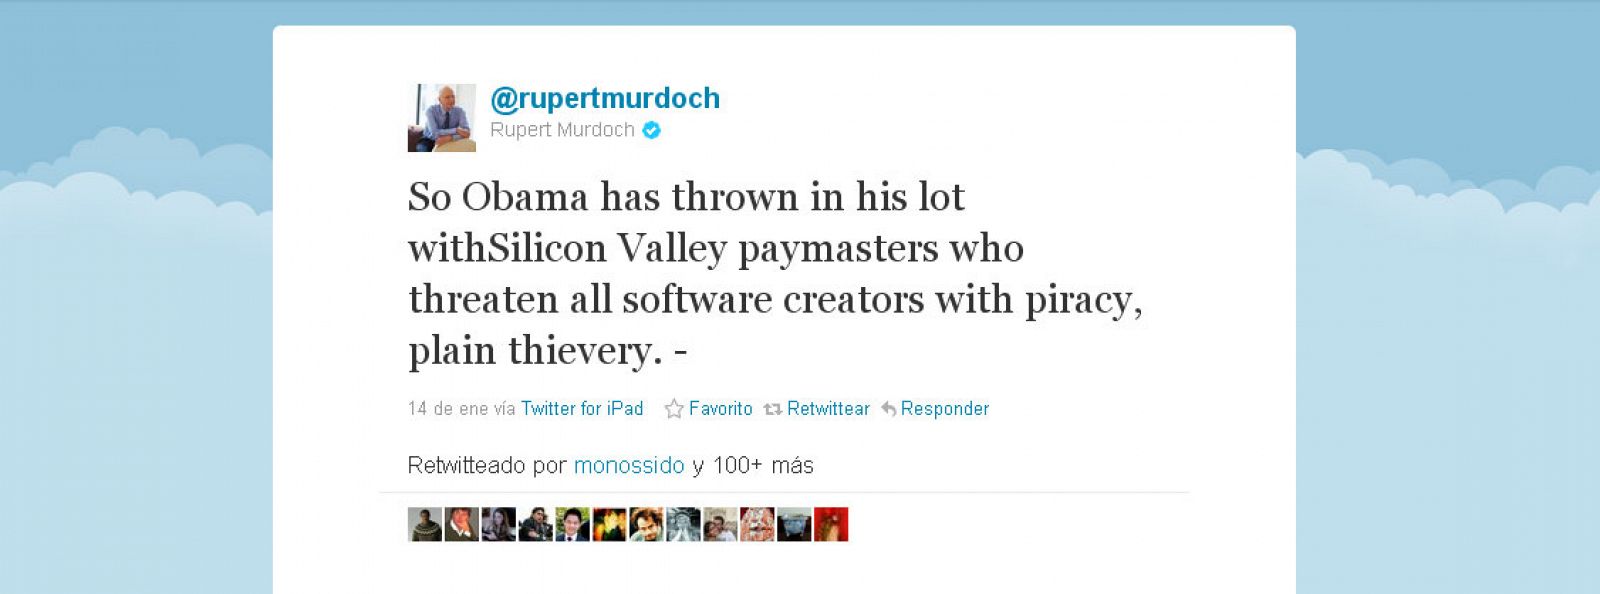 El tuit en el que Rupert Murdoch arremete contra Obama por las críticas de la Casa Blanca a la ley SOPA